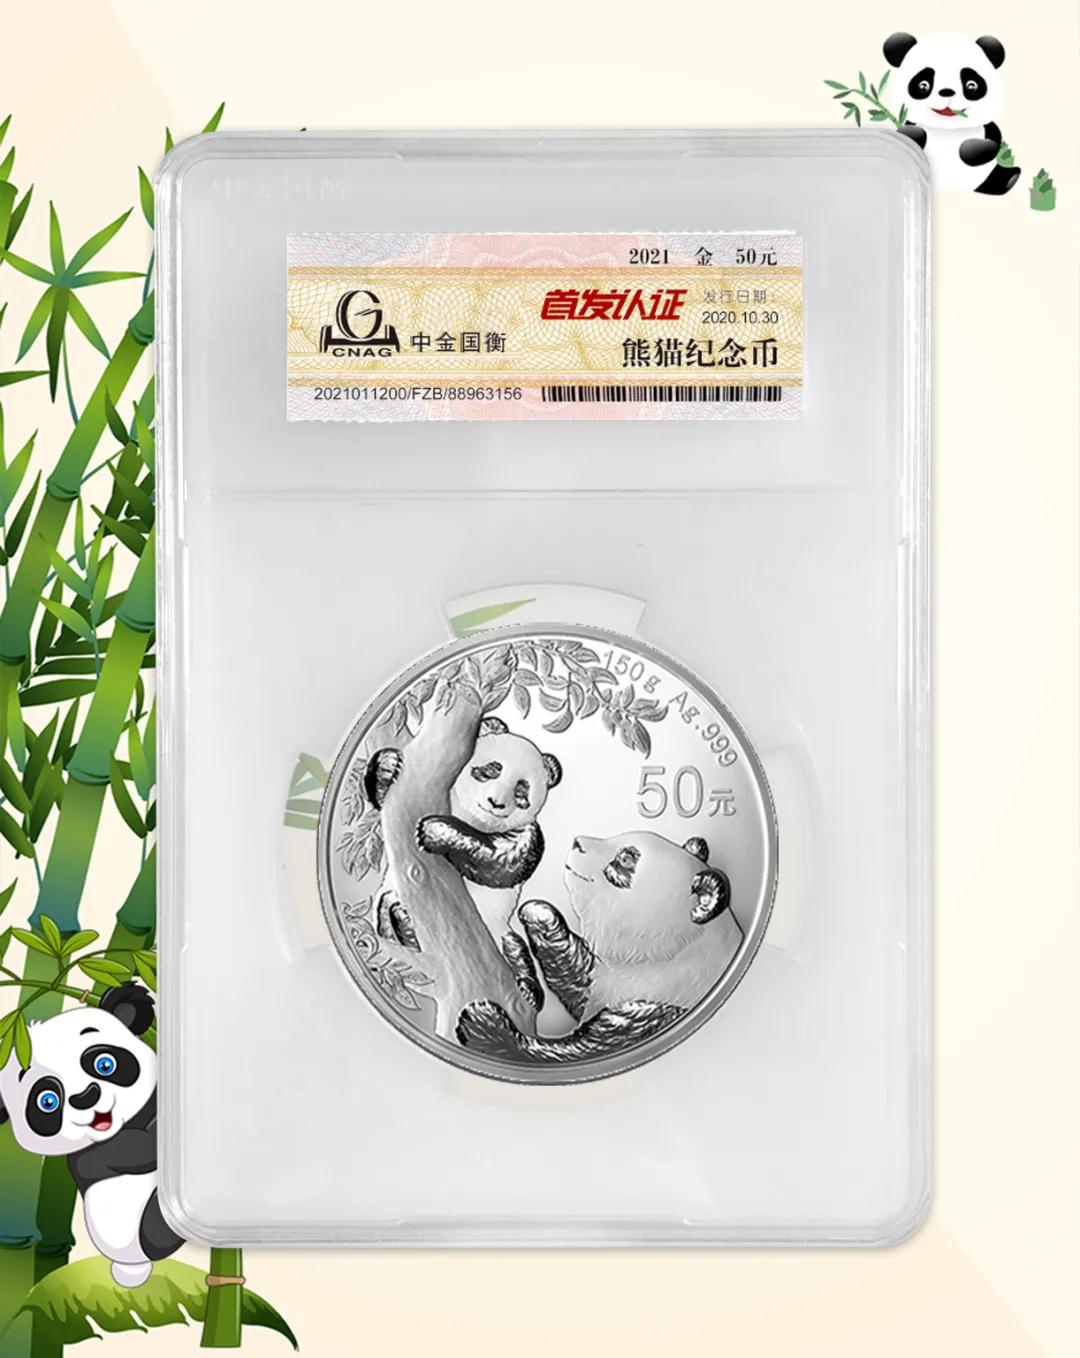 公告丨2021版熊猫金银纪念币“首发认证”开始预约